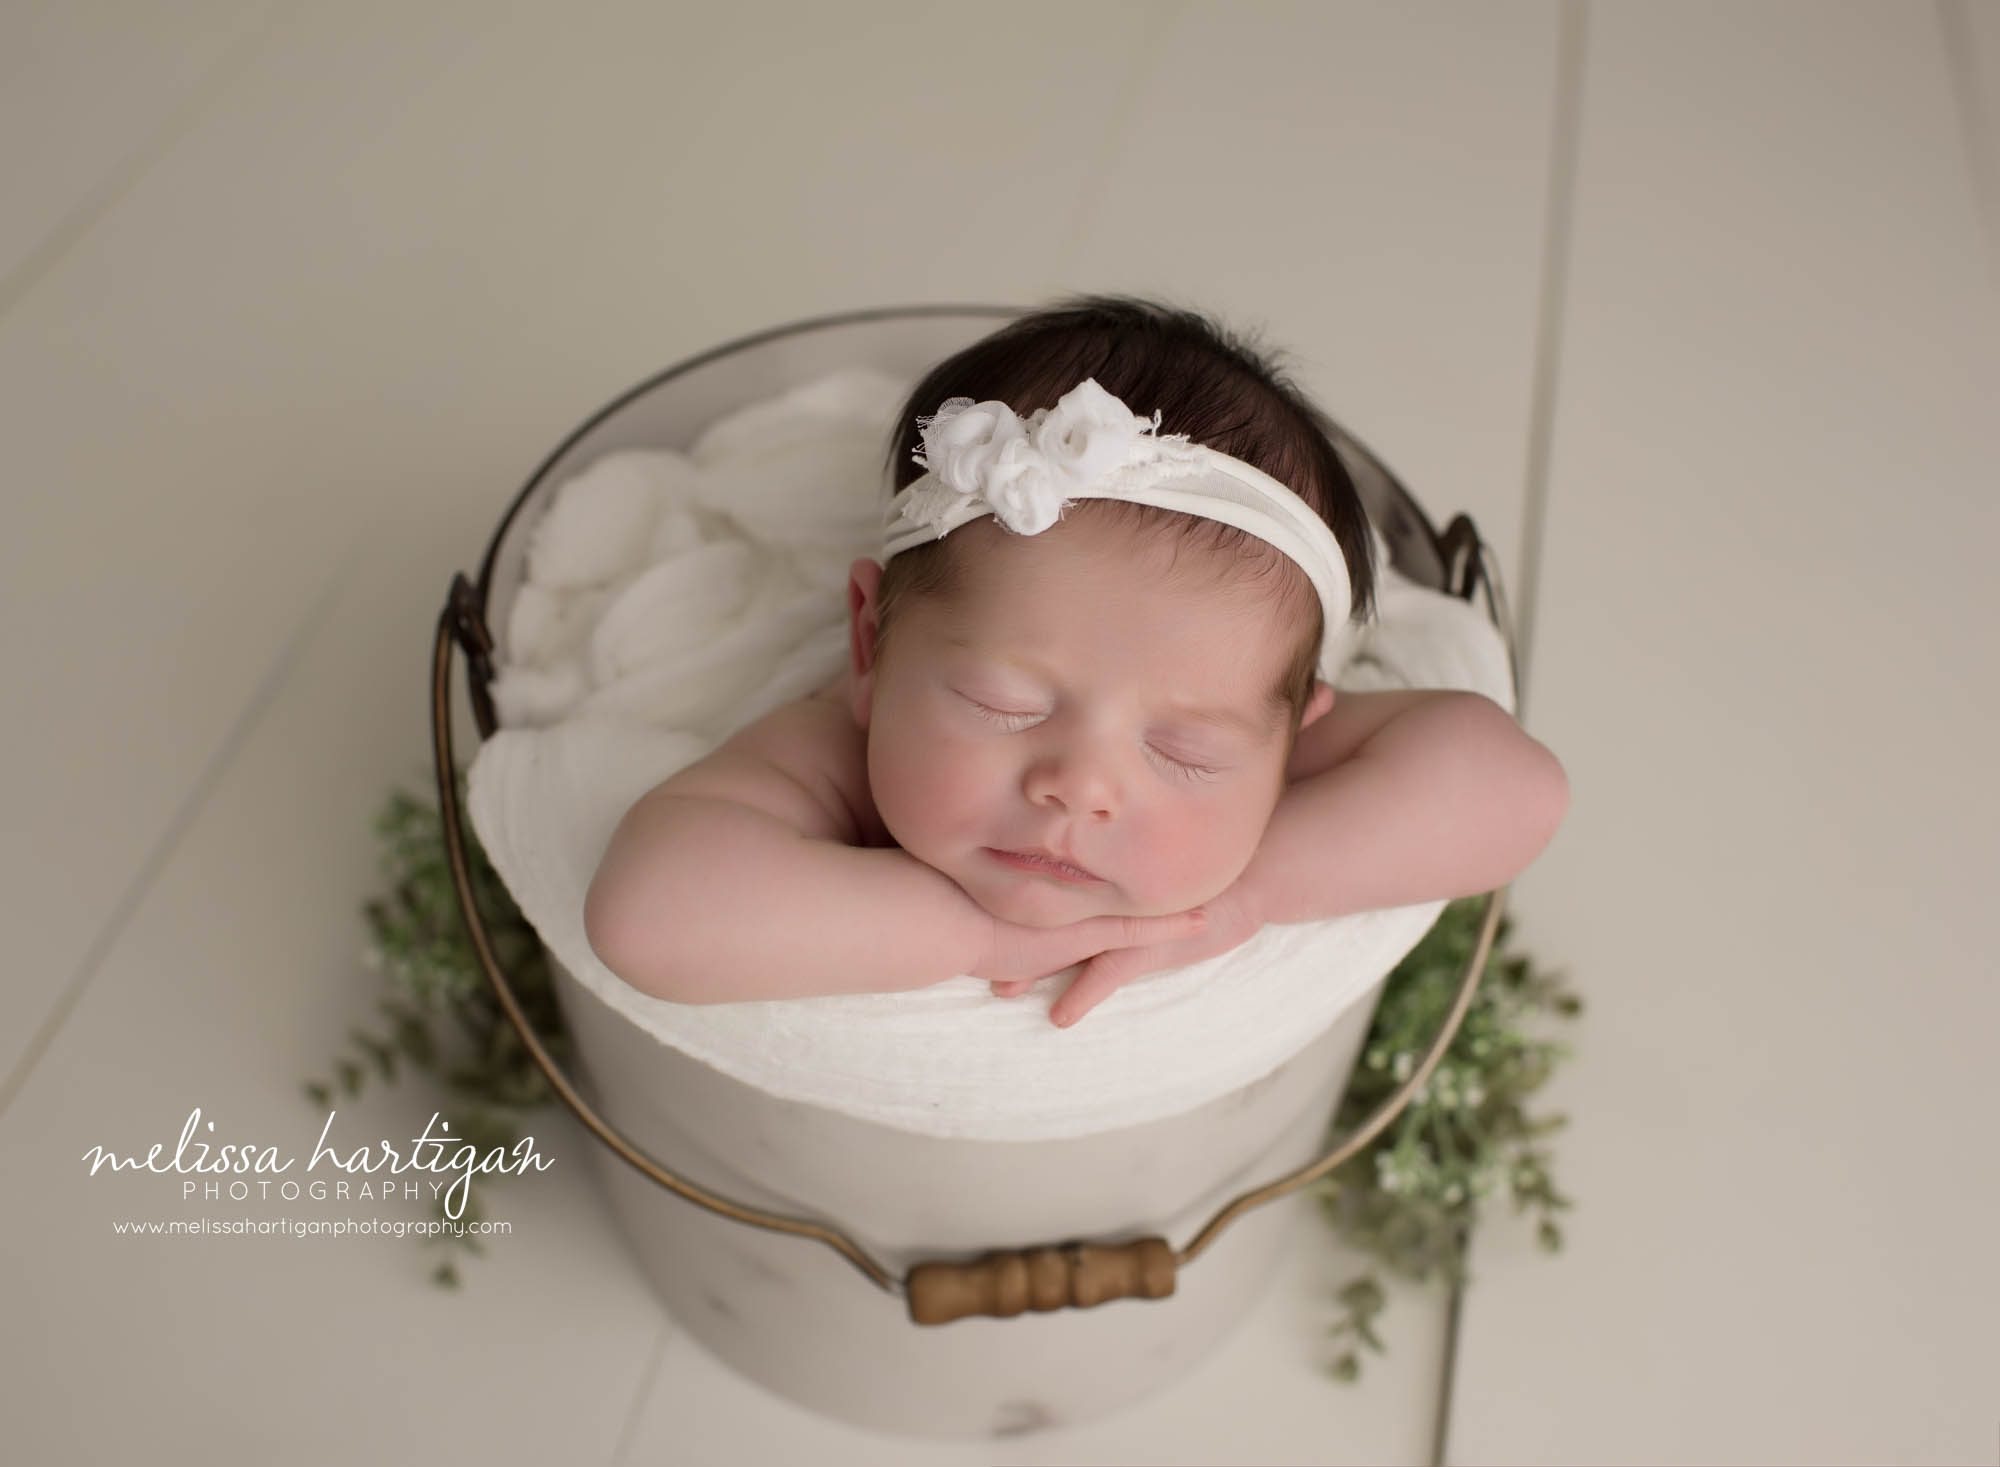 newborn baby girl posed in bucket wearing white bow headband